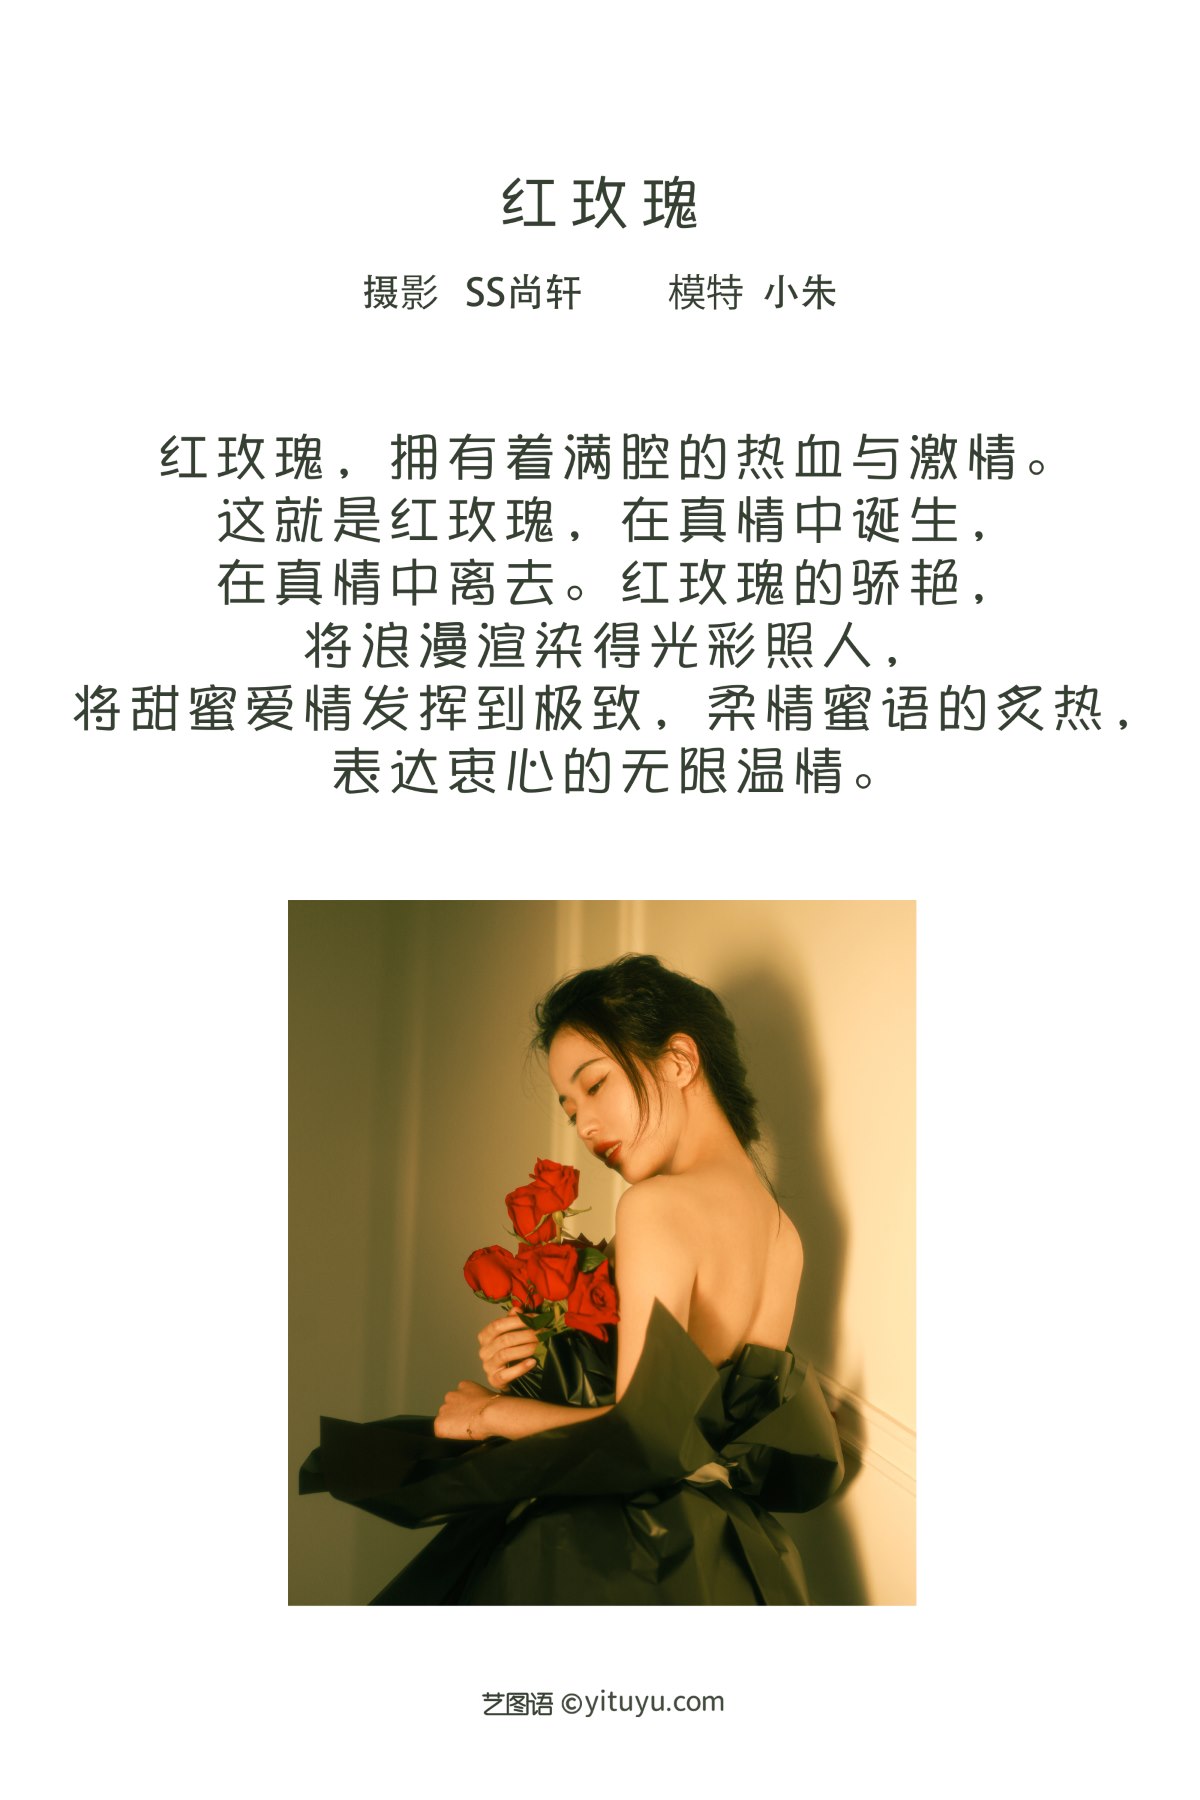 YiTuYu艺图语 Vol 2181 Xiao Zhu 0001 1867851016.jpg